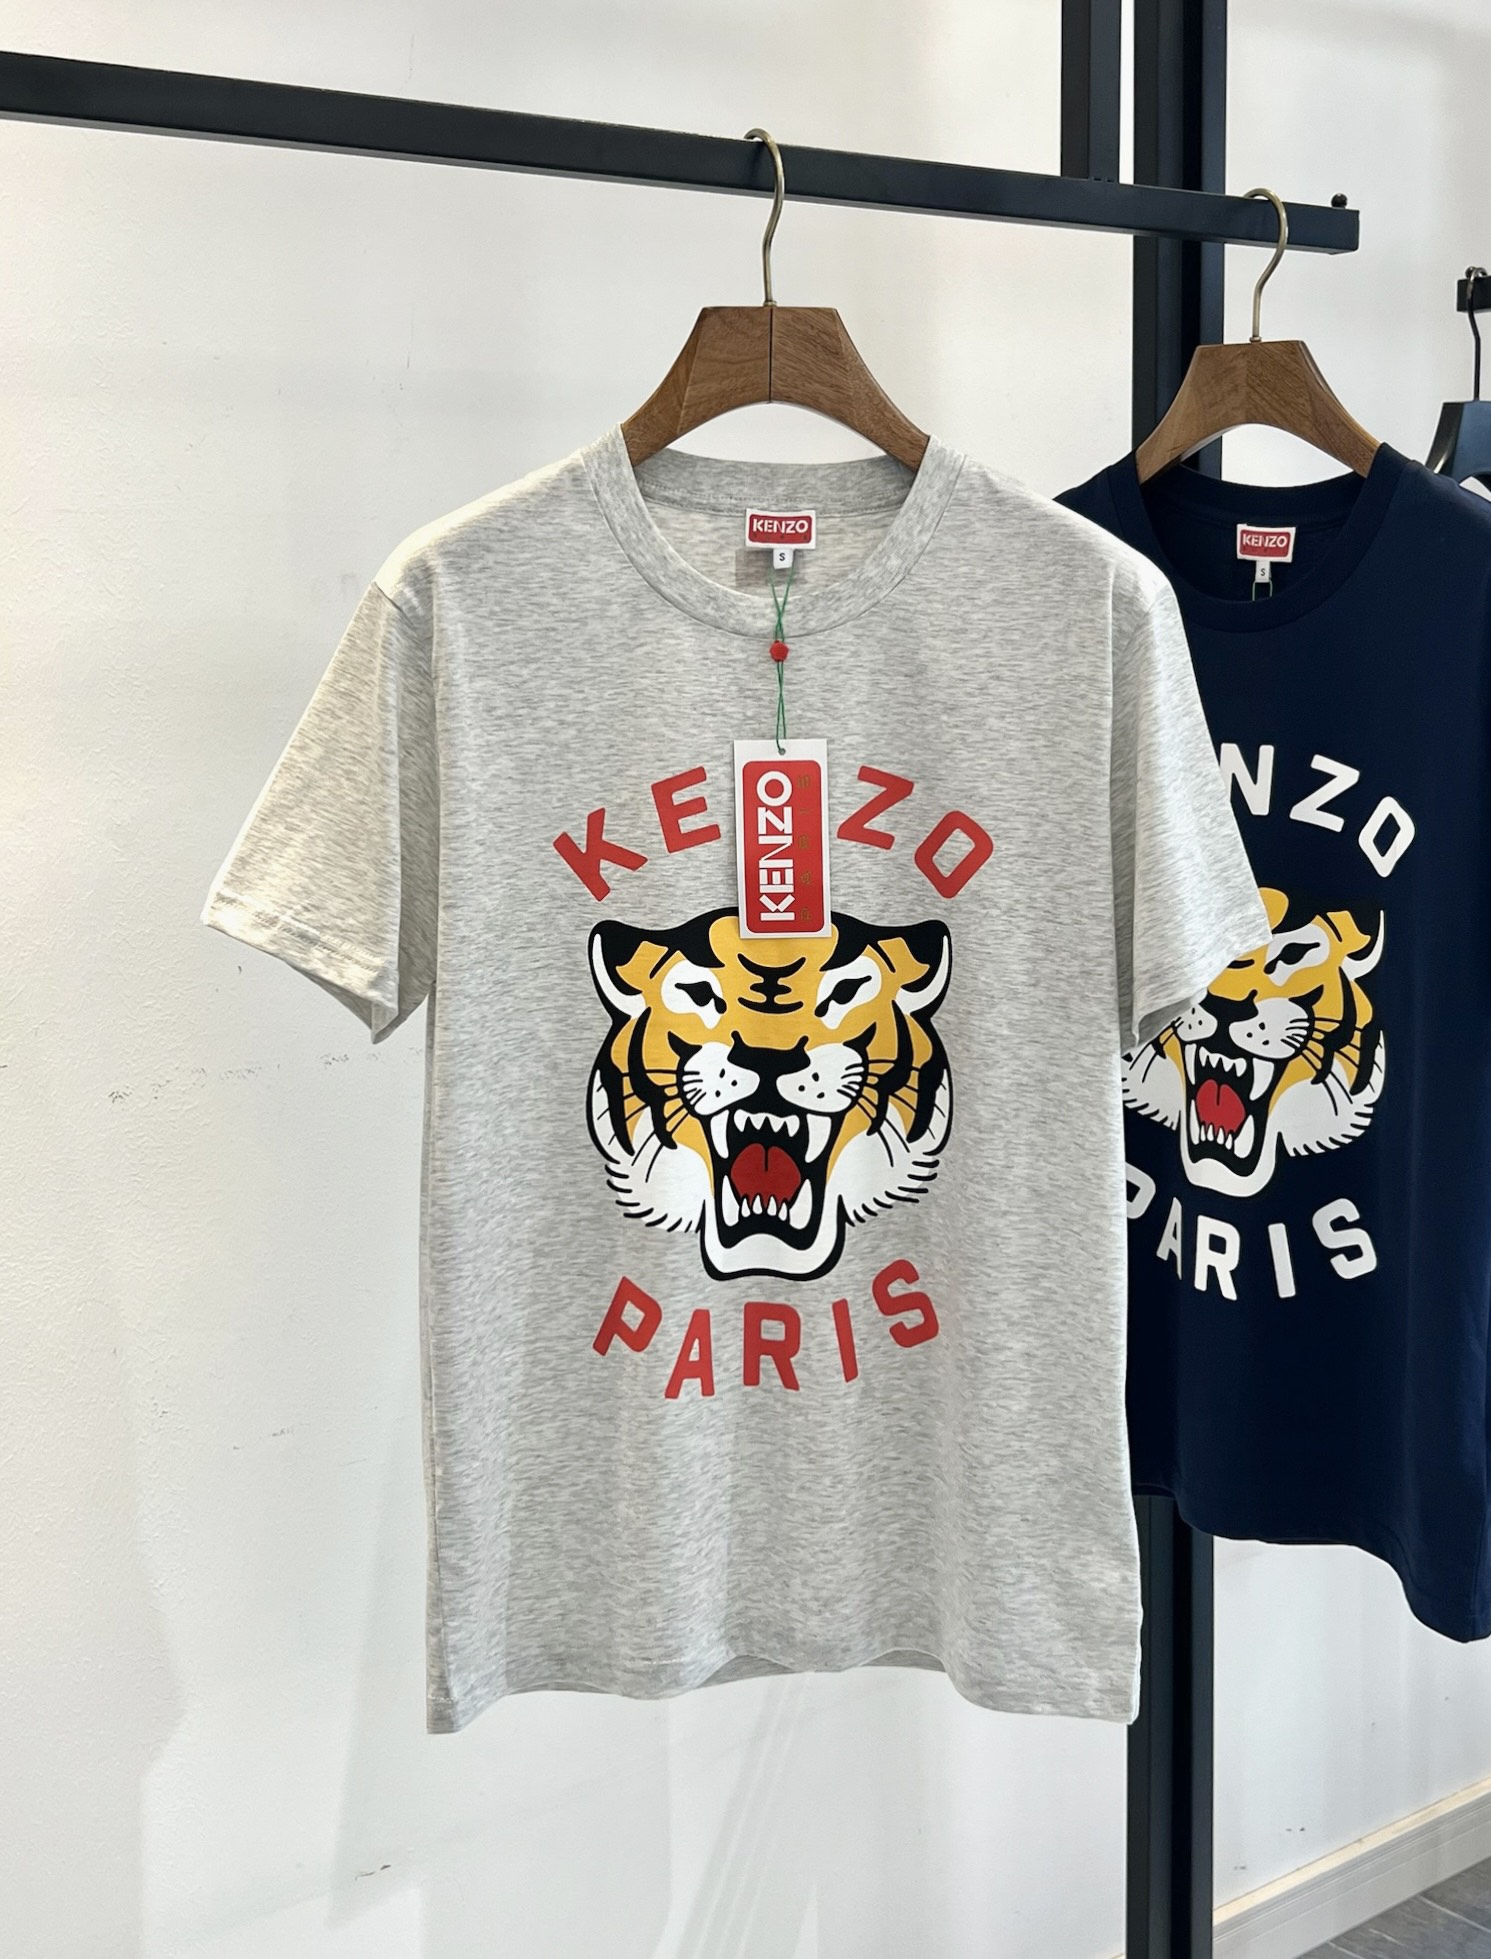 这款T恤饰有新颖且与众不同的“KenzoLucky Tiger”图案。Nigo设计的“Lucky Tiger'”与Kenzo Takada设计的〞大象”一起，成为本品牌的标志性吉祥物。这个中性款式采用了现代宽松版型。入春第一步 感受T恤的酷 ！这一波Kenzo新版虎头真是一季比一季好看 T恤除了看版型 图案更吸睛大标oversize 印花T 无性别穿搭体恤 女生直接配 leggings一件无烦恼搭配 搞个情侣装穿穿也不错！